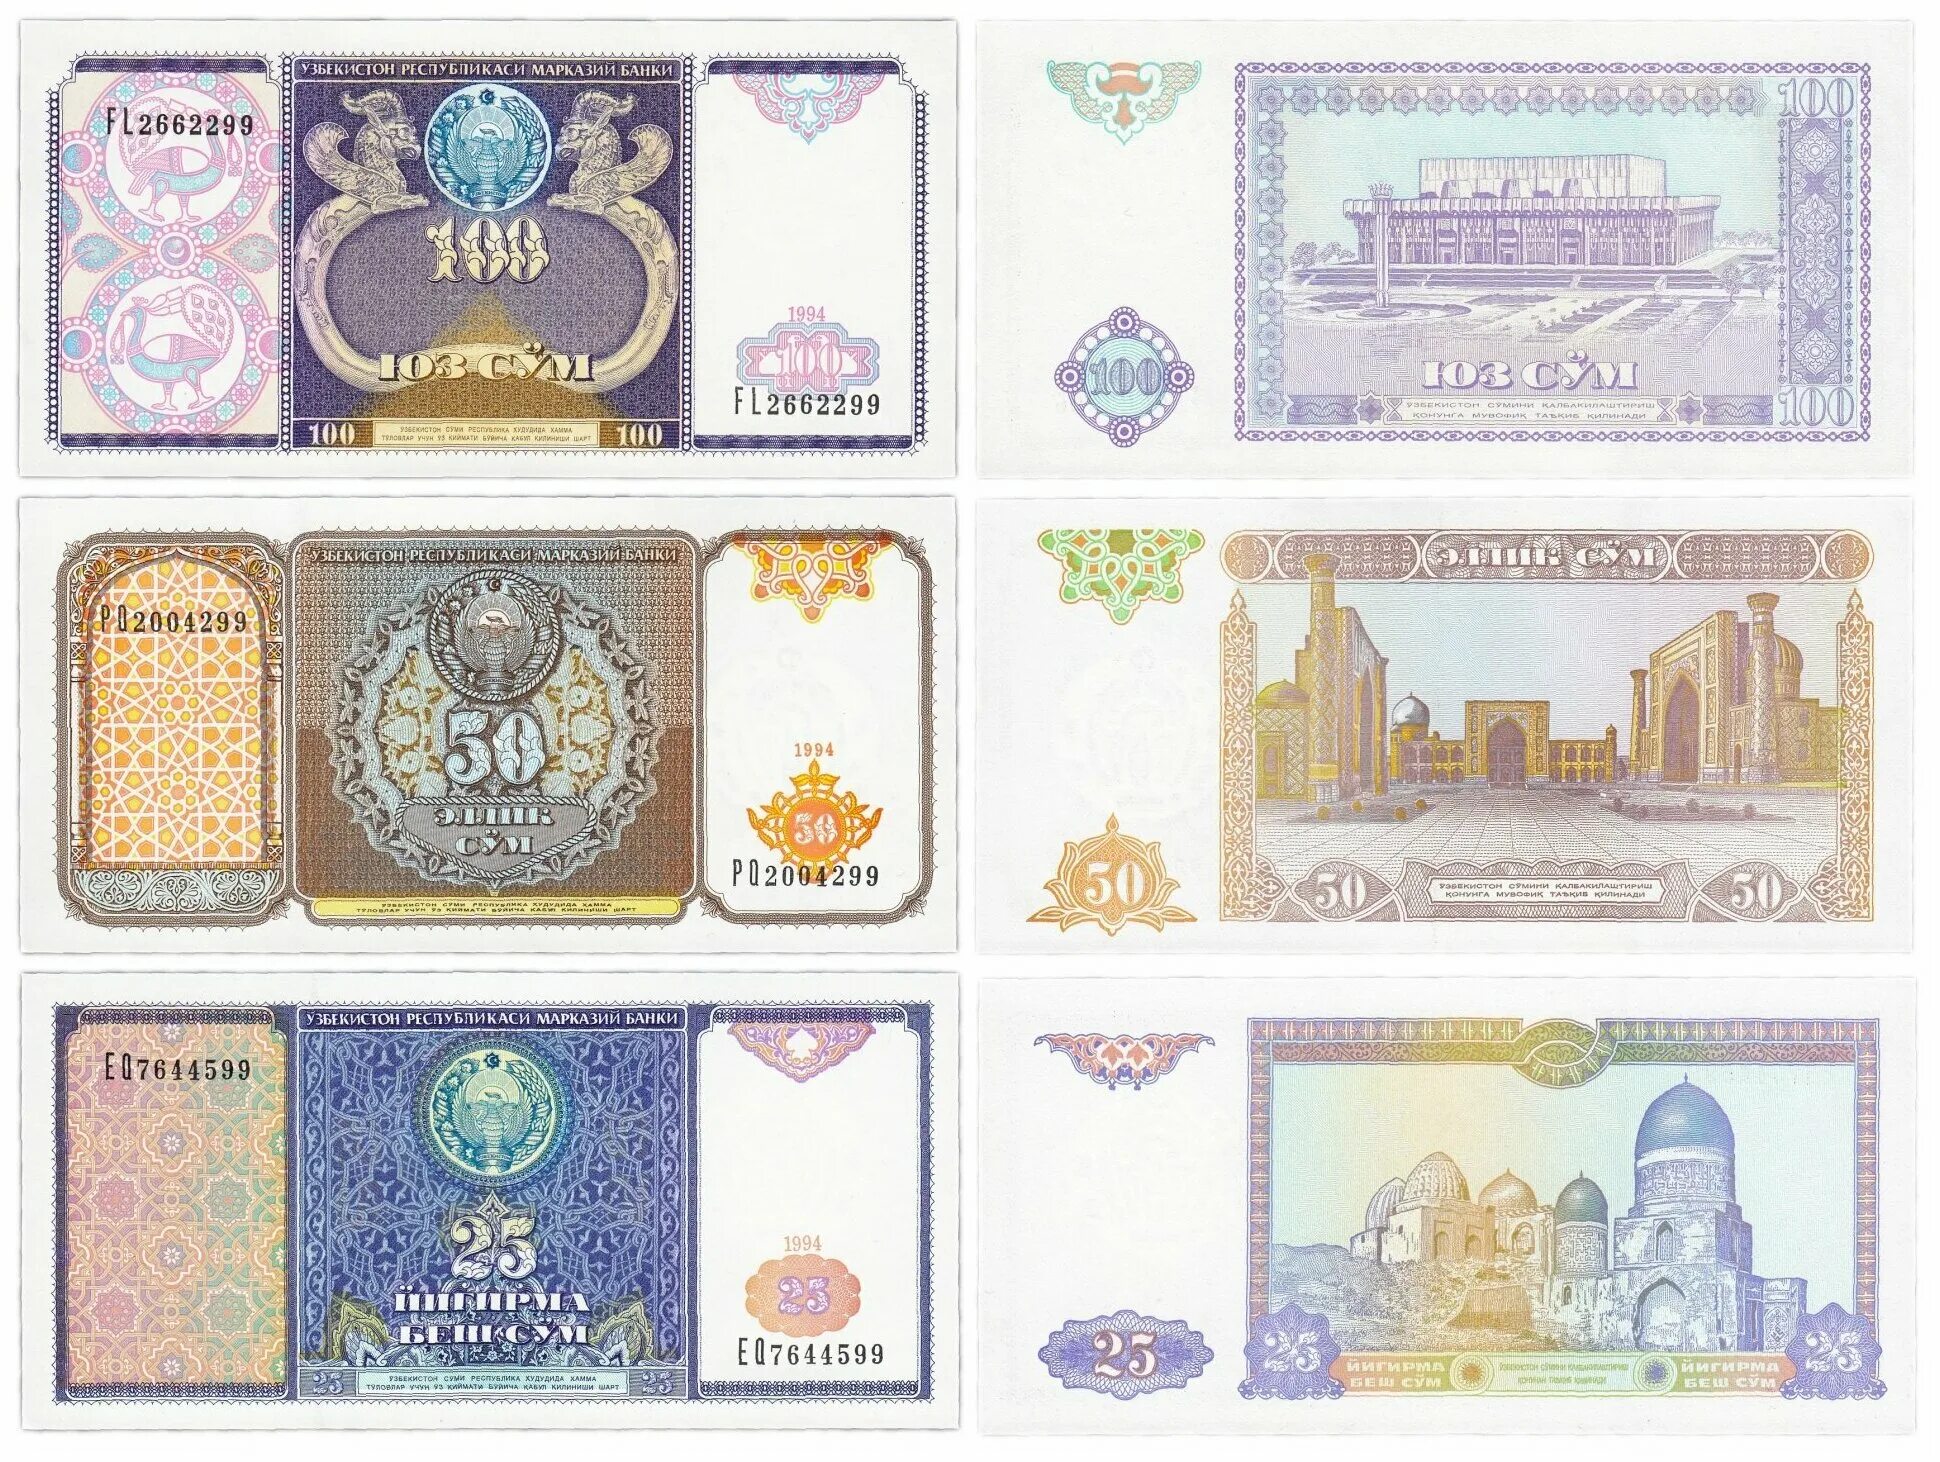 800 сум. Купюра 100 сум Узбекистан. Банкноты Узбекистана 1994 года. Банкнота 100 сум 1994 год Узбекистан. Узбекистан 100 сум 1994 года.